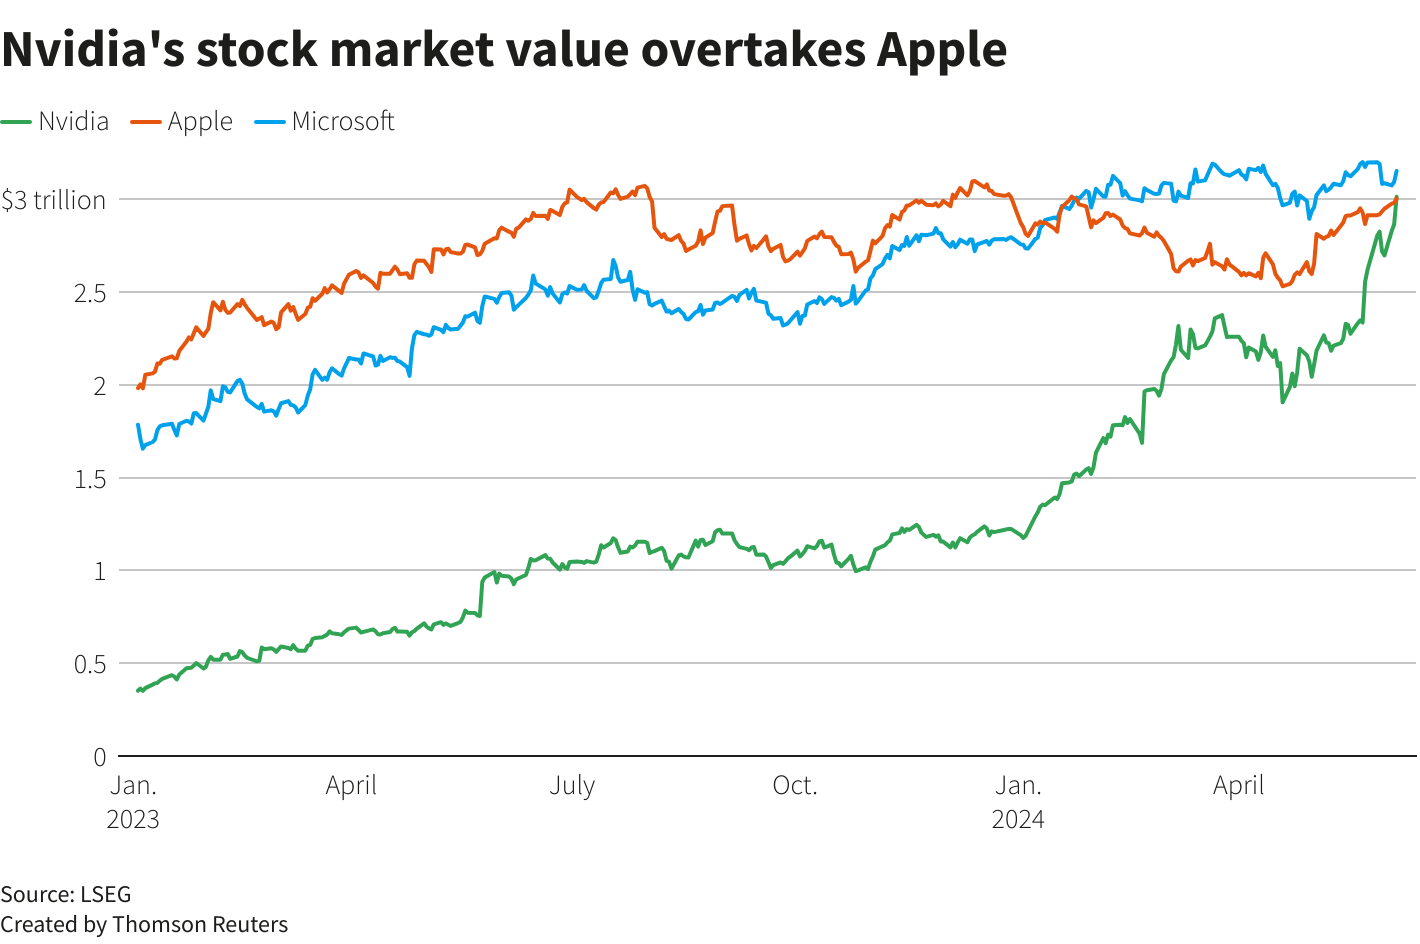 Nvidia Overtakes Apple as No. 2 Company